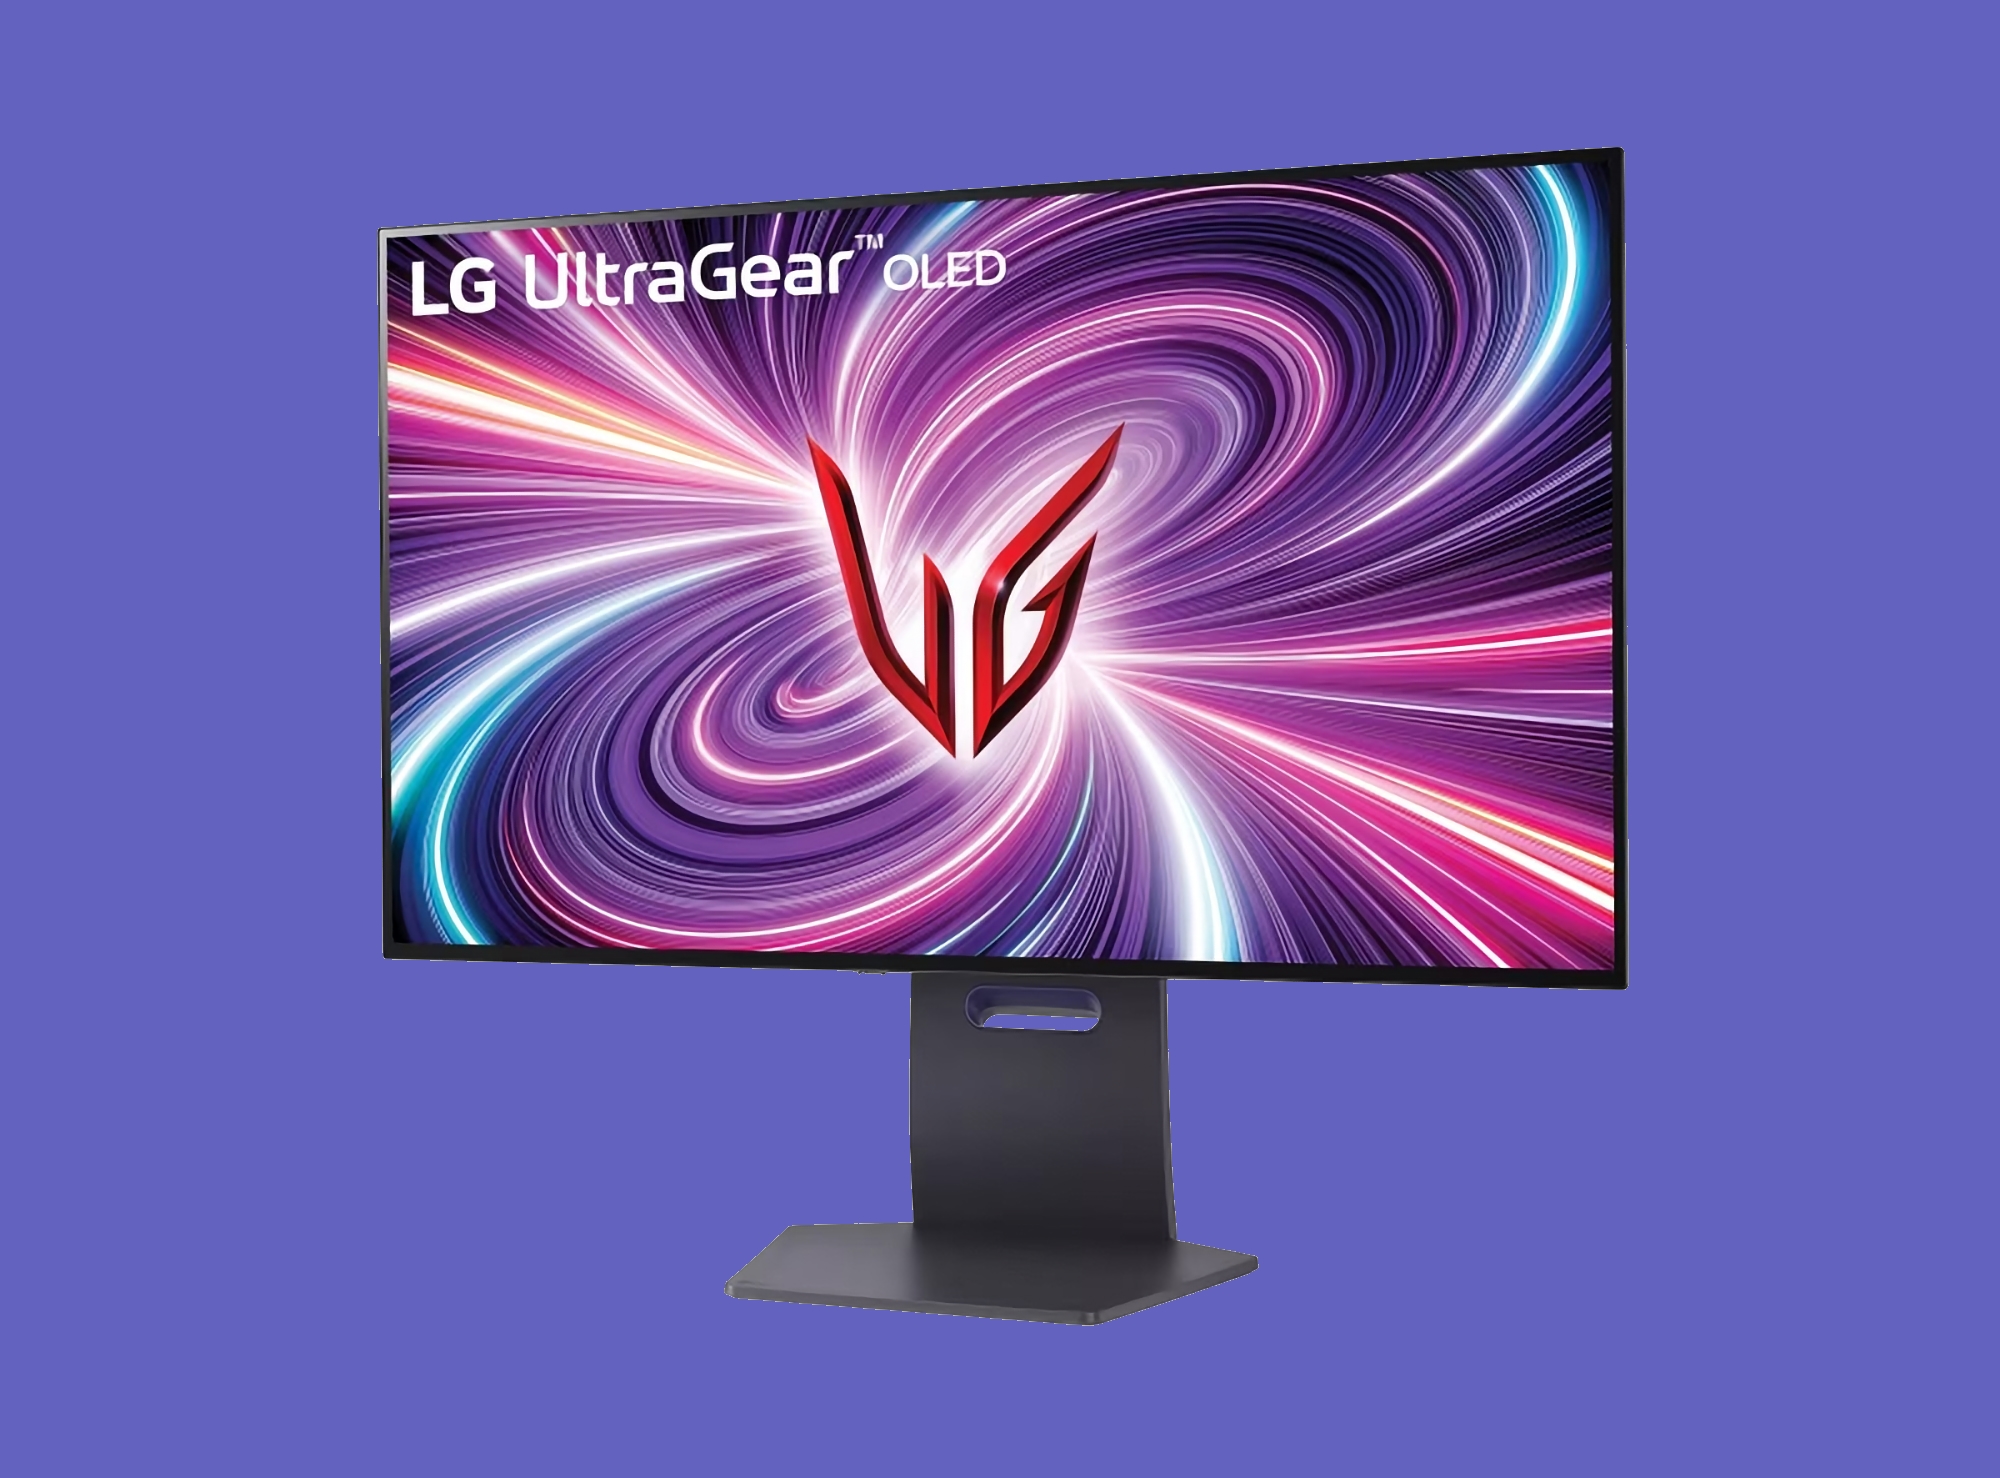 LG ha anunciado nuevos monitores gaming UltraGear con pantallas OLED 4K y velocidades de hasta 480Hz